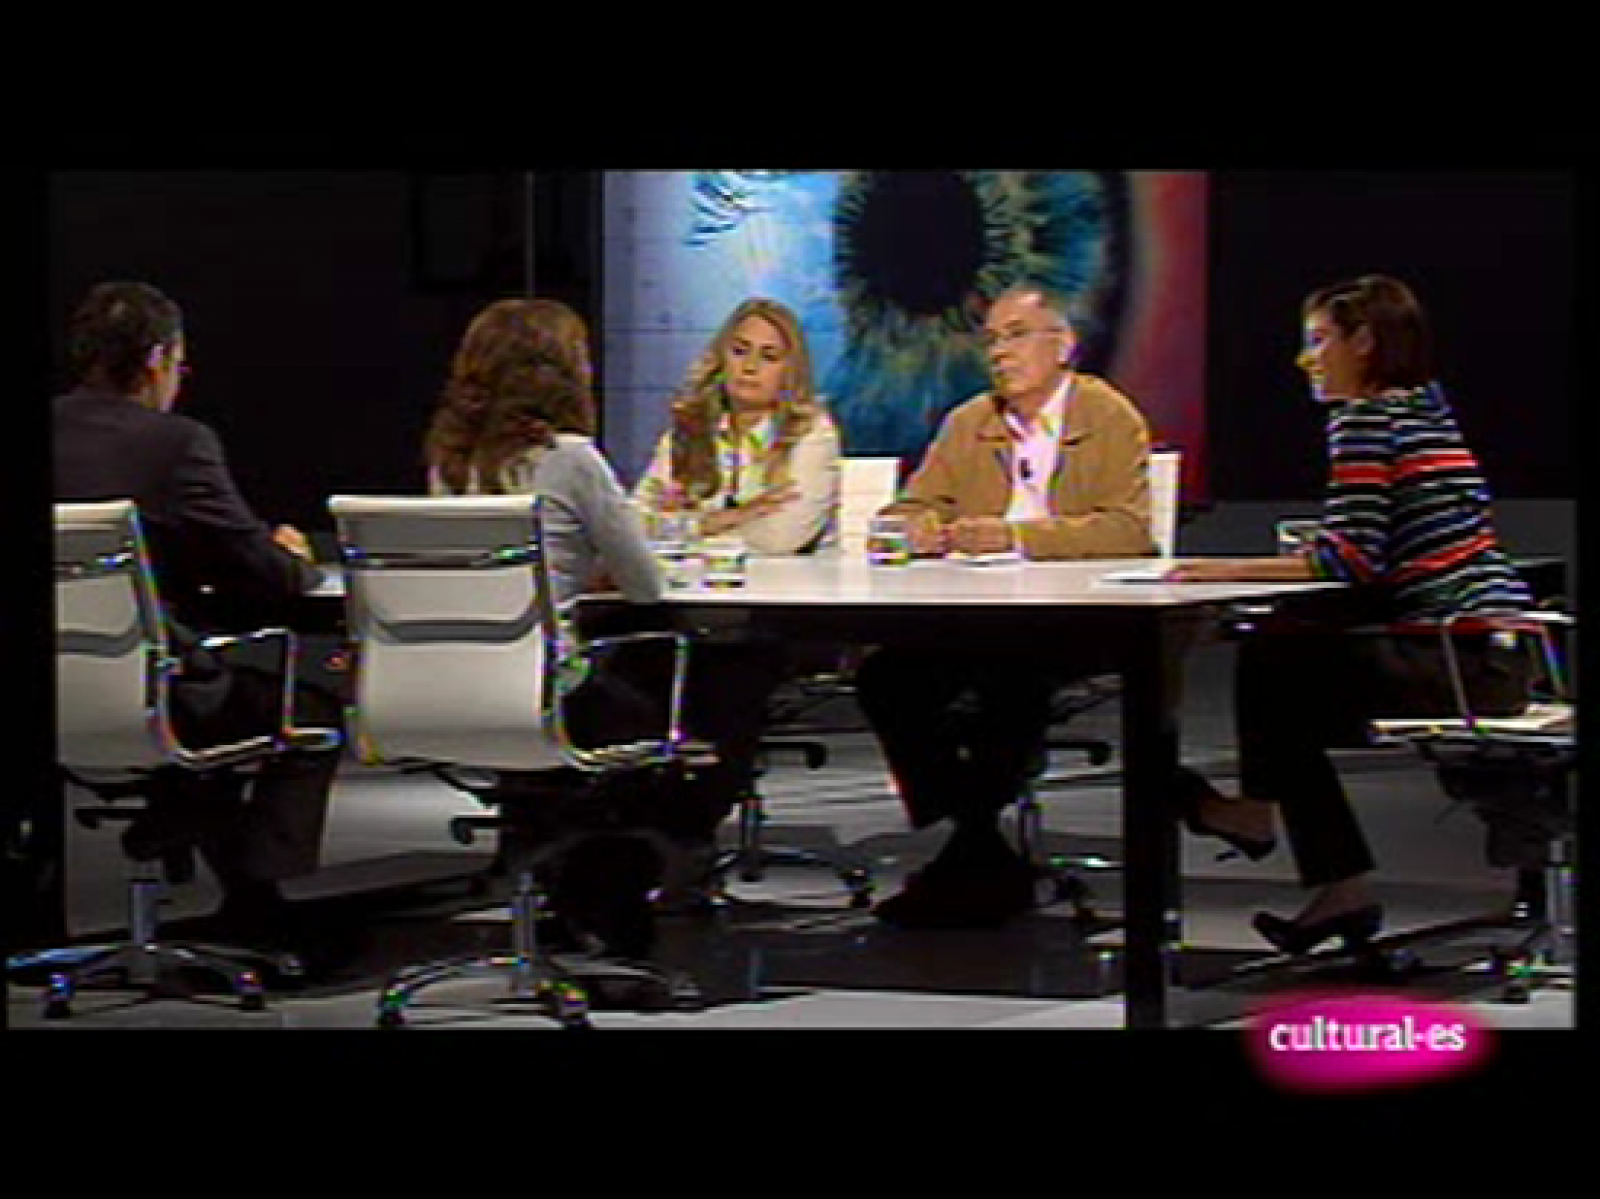 Los debates de Cultural.es - 06/10/09